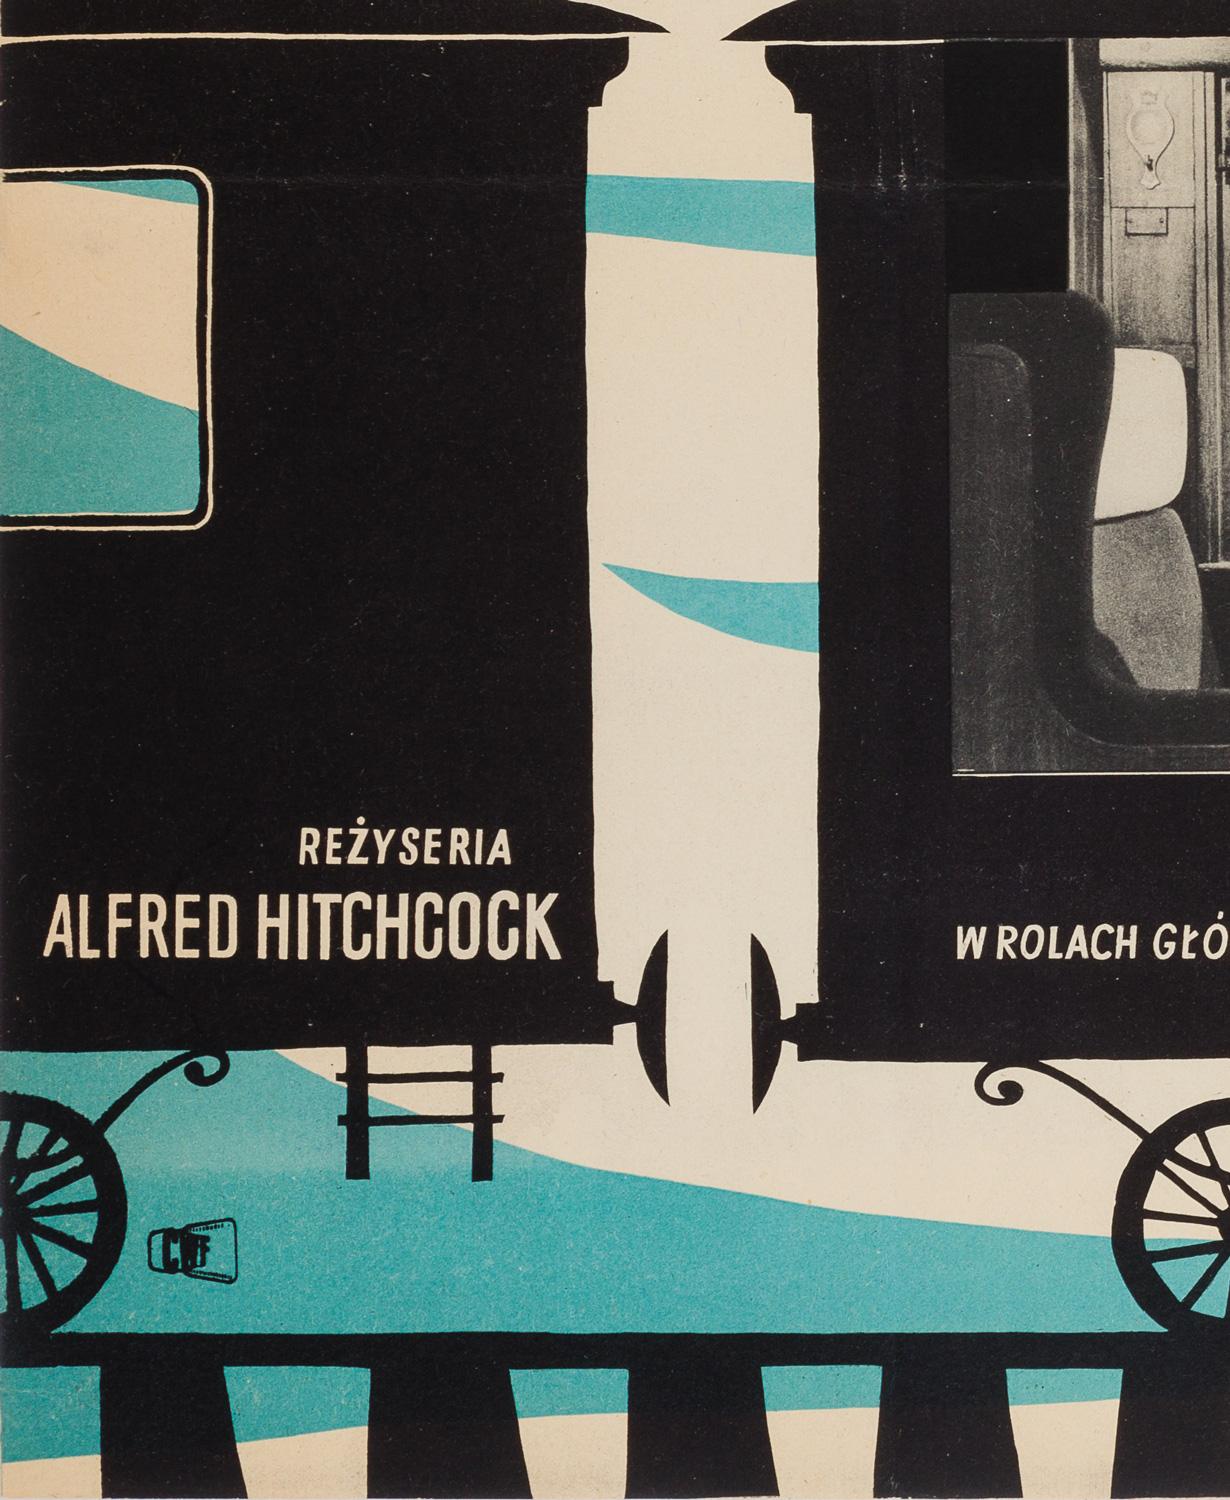 Paper Spellbound Original Polish Film Poster, Andrzej Heidrich, 1959